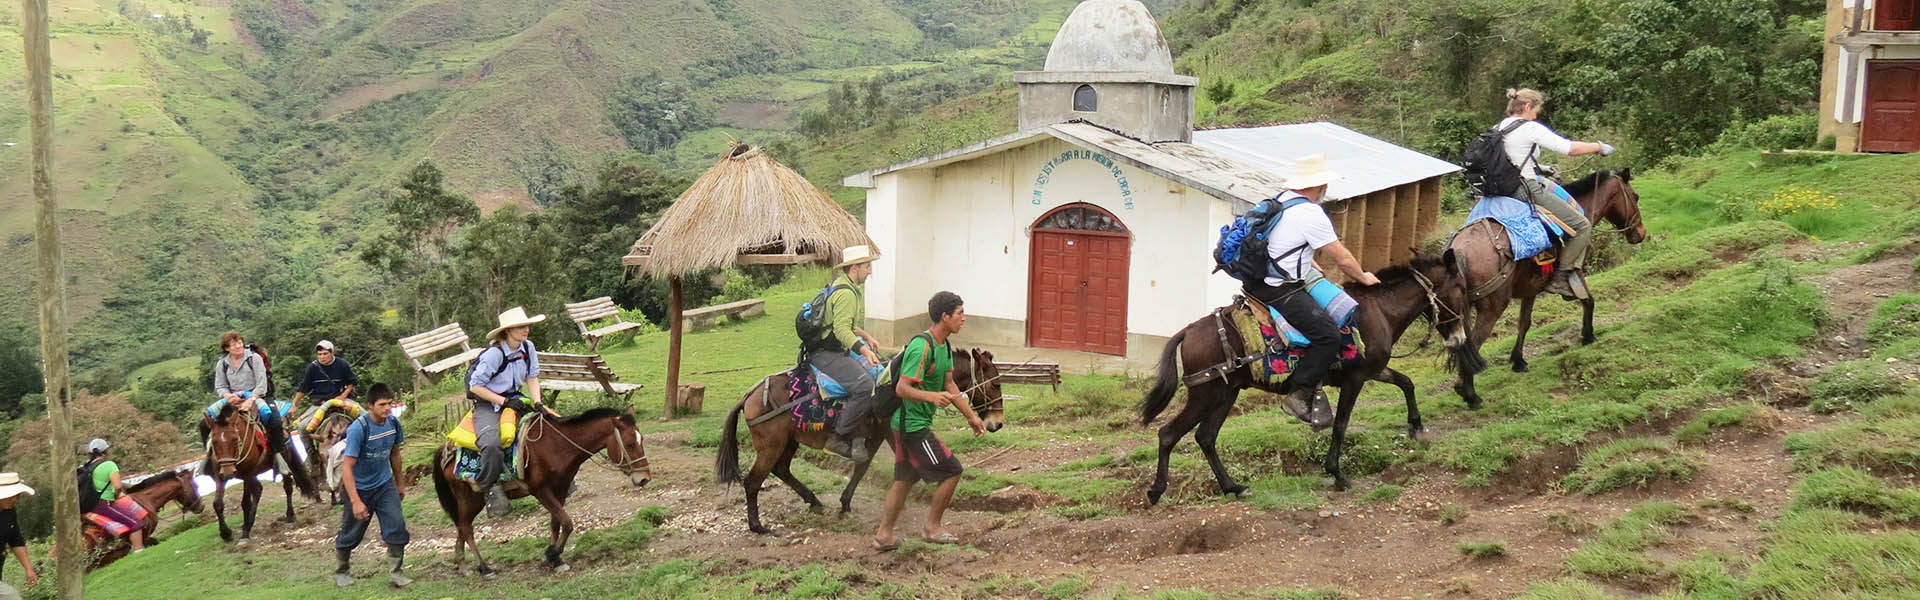 Coex Amazon - Utenfor Allfarvei - Unike rundreiser i Peru for små grupper